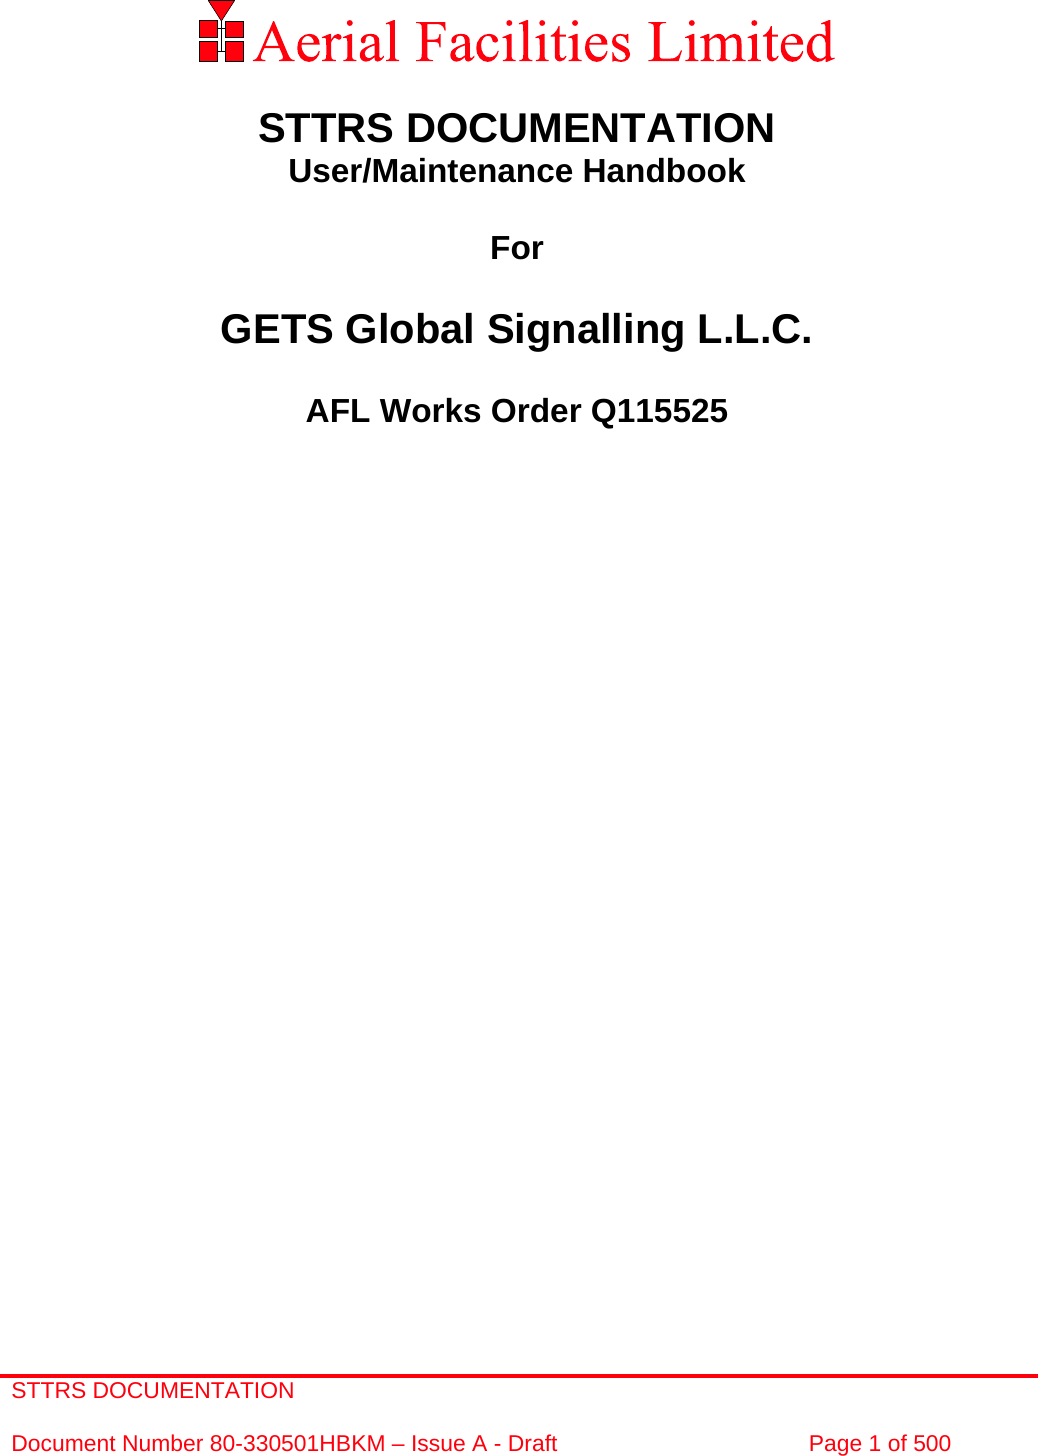 STTRS DOCUMENTATION  Document Number 80-330501HBKM – Issue A - Draft  Page 1 of 500              STTRS DOCUMENTATION User/Maintenance Handbook  For  GETS Global Signalling L.L.C.  AFL Works Order Q115525         